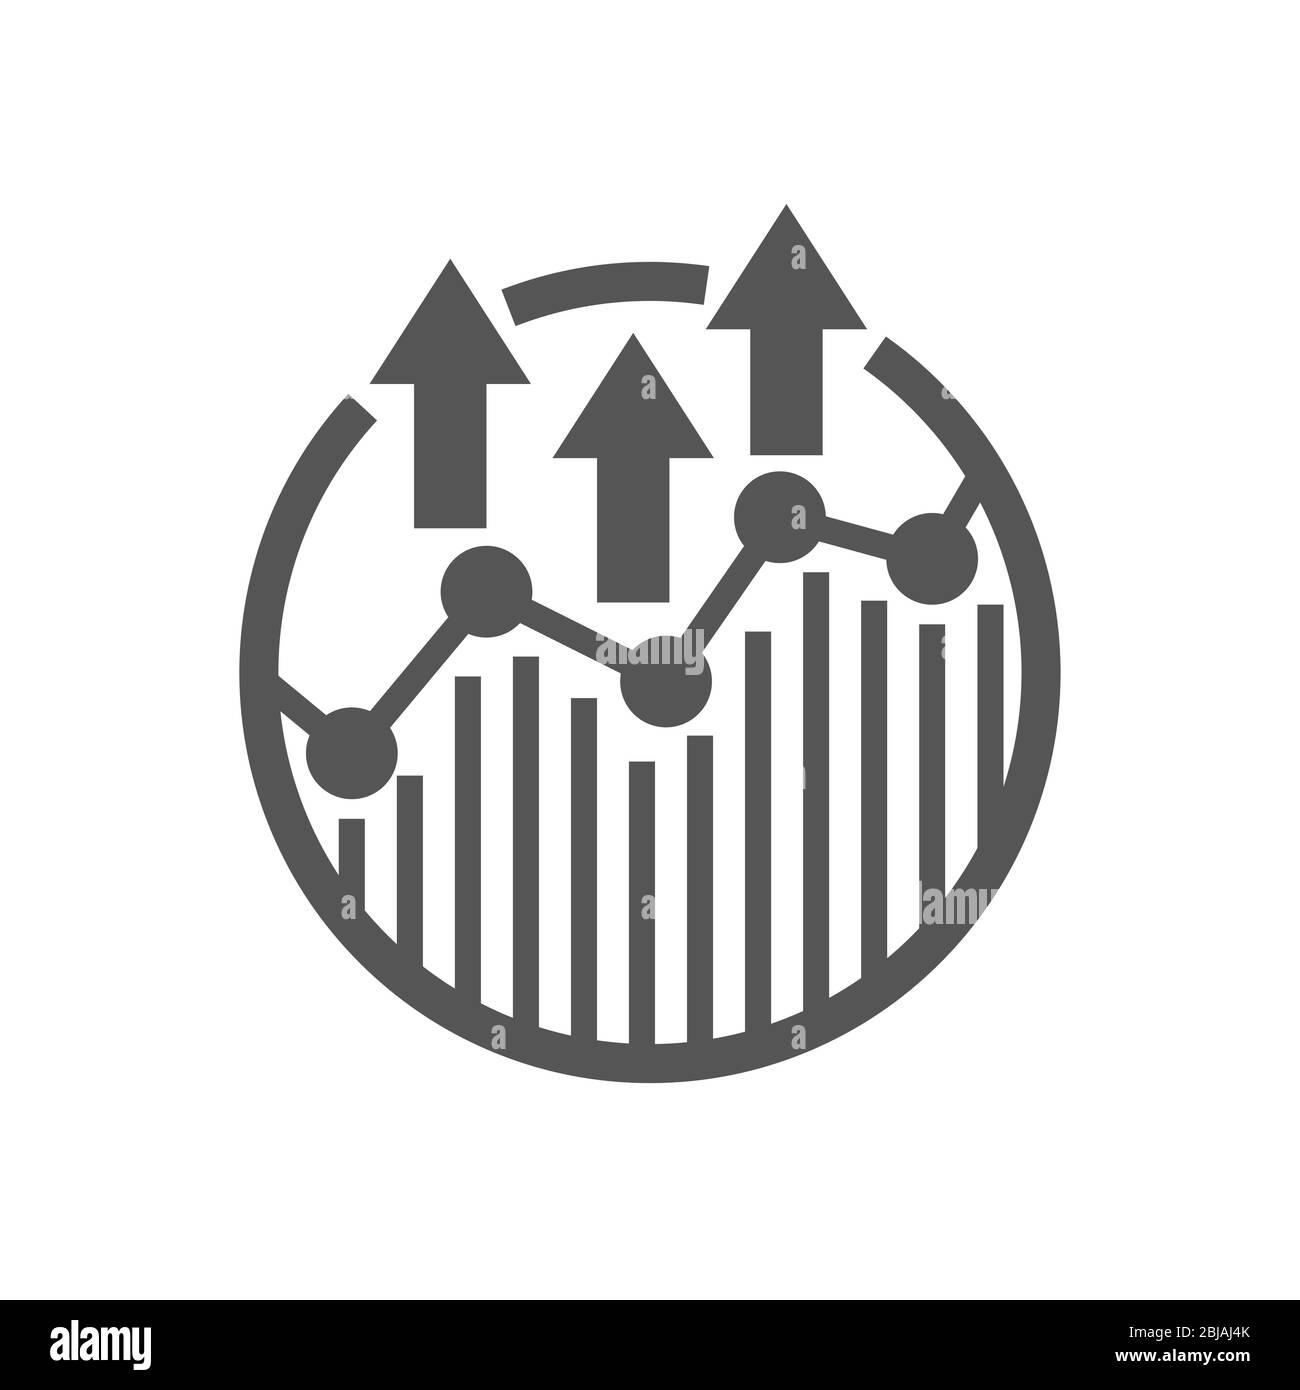 Creative modern logo design for trade shows growing graph sign template. EPS 10 Stock Vector